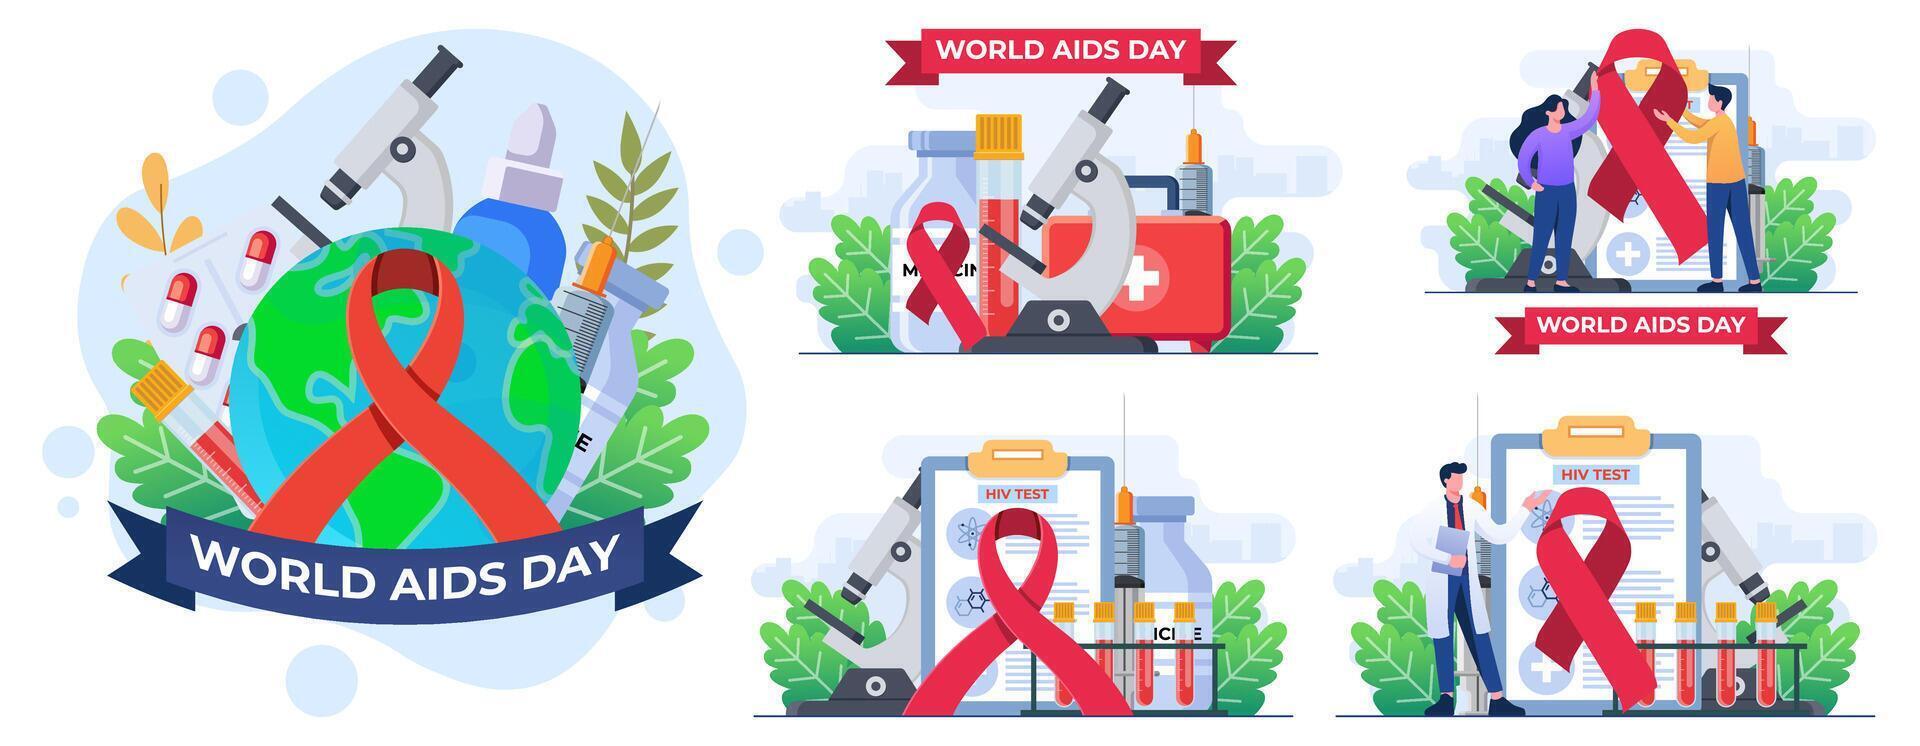 uppsättning av platt illustrationer av värld AIDS dag koncept, medicinsk doktorer med ett HIV testa rör är forska hjälpmedel, röd band till höja medvetenhet av de AIDS epidemi vektor